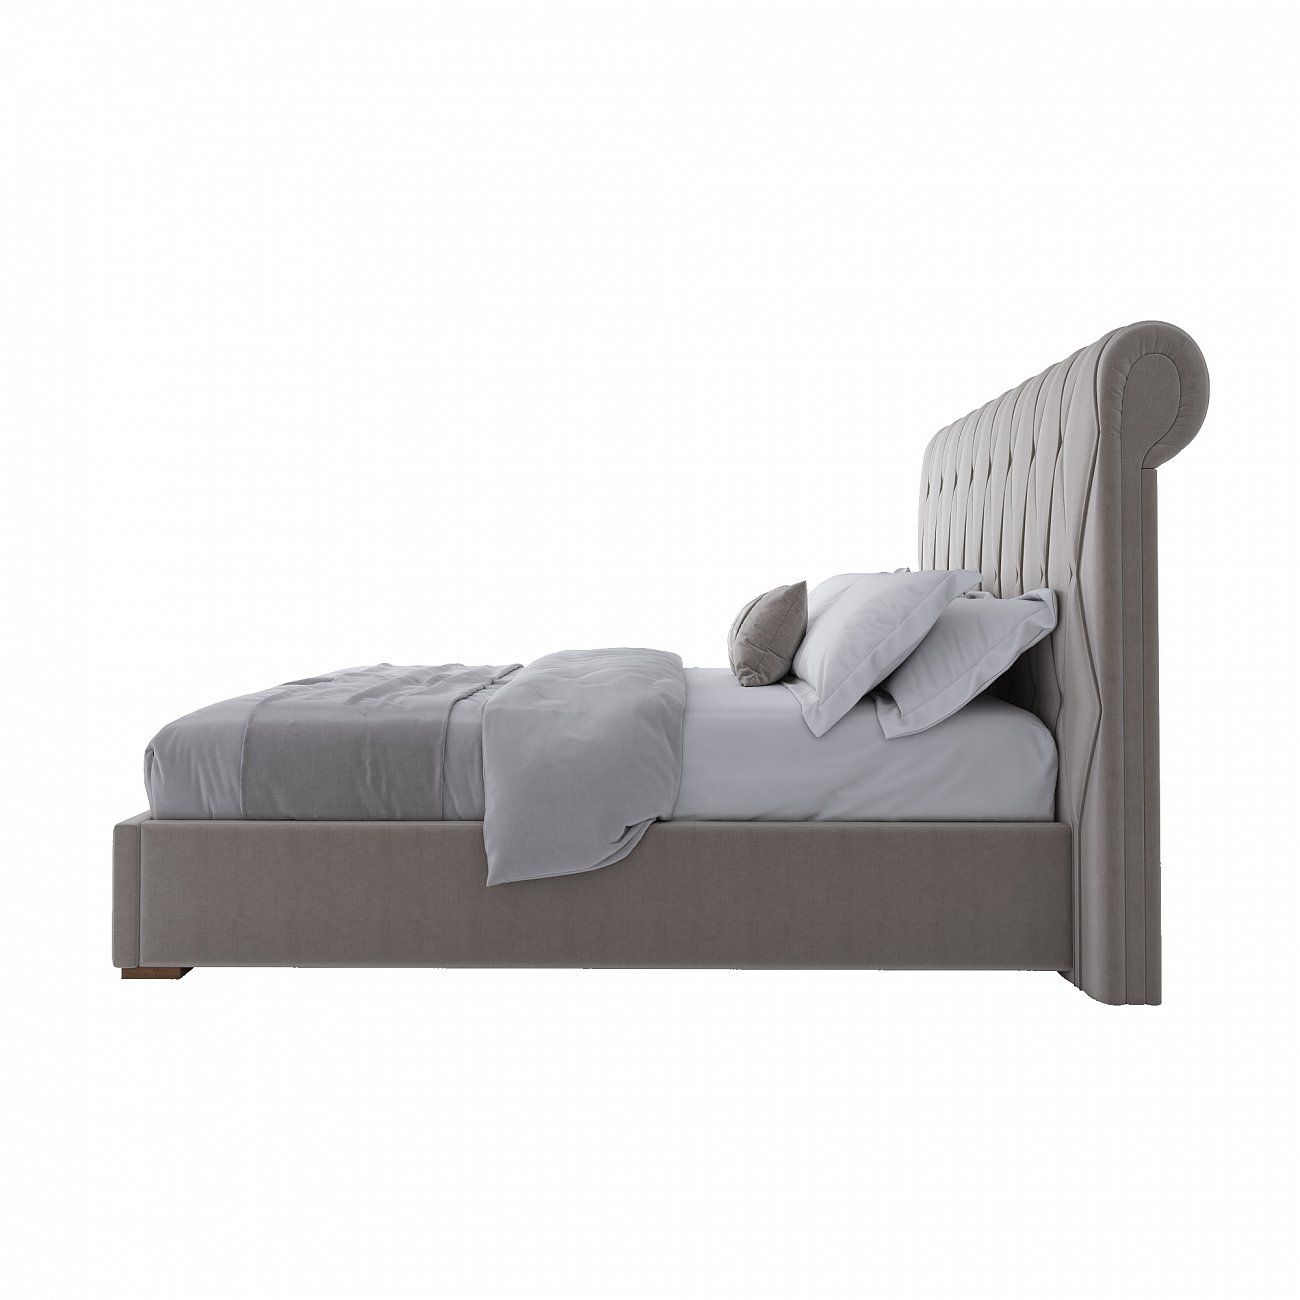 Double bed 180x200 cm beige Bluemoon